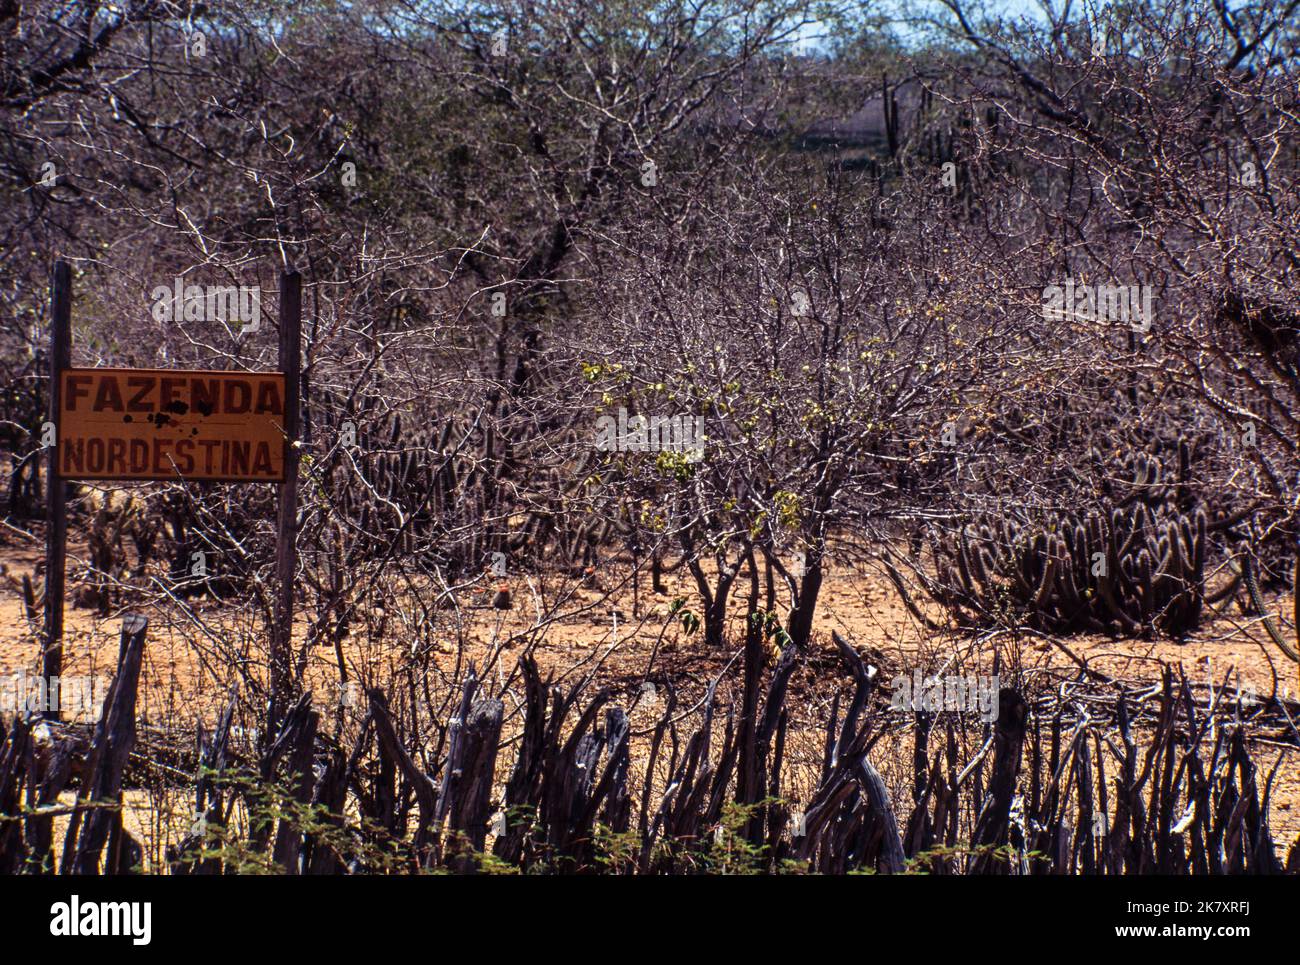 Caatinga biome, un bosque semiárido situado en el noreste de Brasil, extremadamente rico en recursos naturales. La región es uno de los paisajes naturales brasileños más amenazados y algunas zonas sufren de desertificación. Estado de Pernambuco. Foto de stock